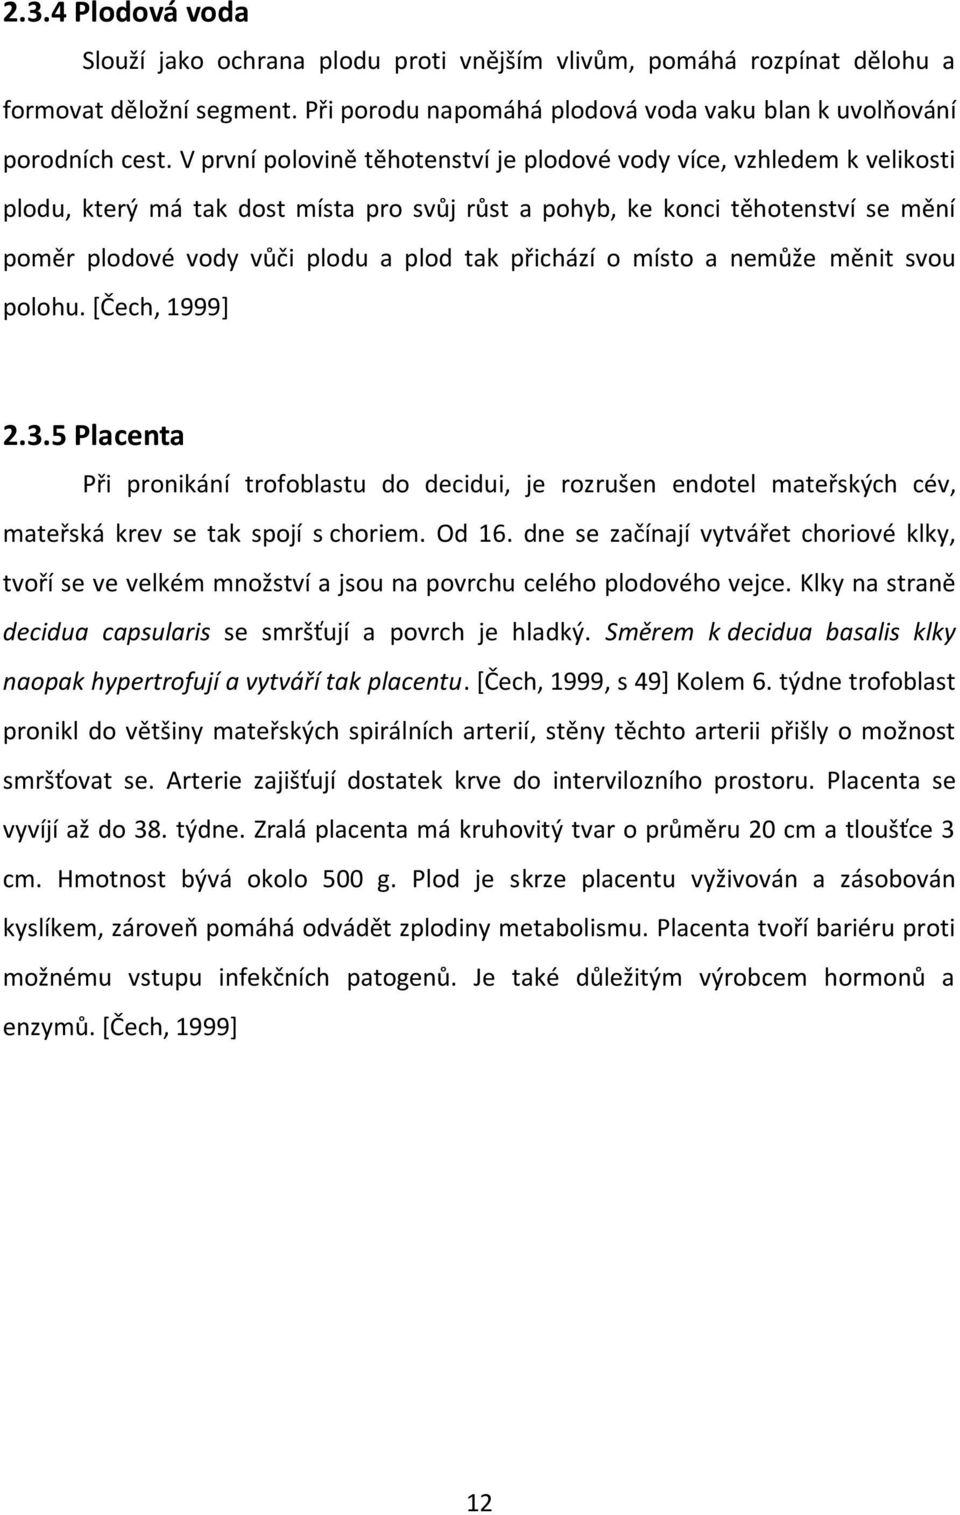 přichází o místo a nemůže měnit svou polohu. [Čech, 1999] 2.3.5 Placenta Při pronikání trofoblastu do decidui, je rozrušen endotel mateřských cév, mateřská krev se tak spojí s choriem. Od 16.